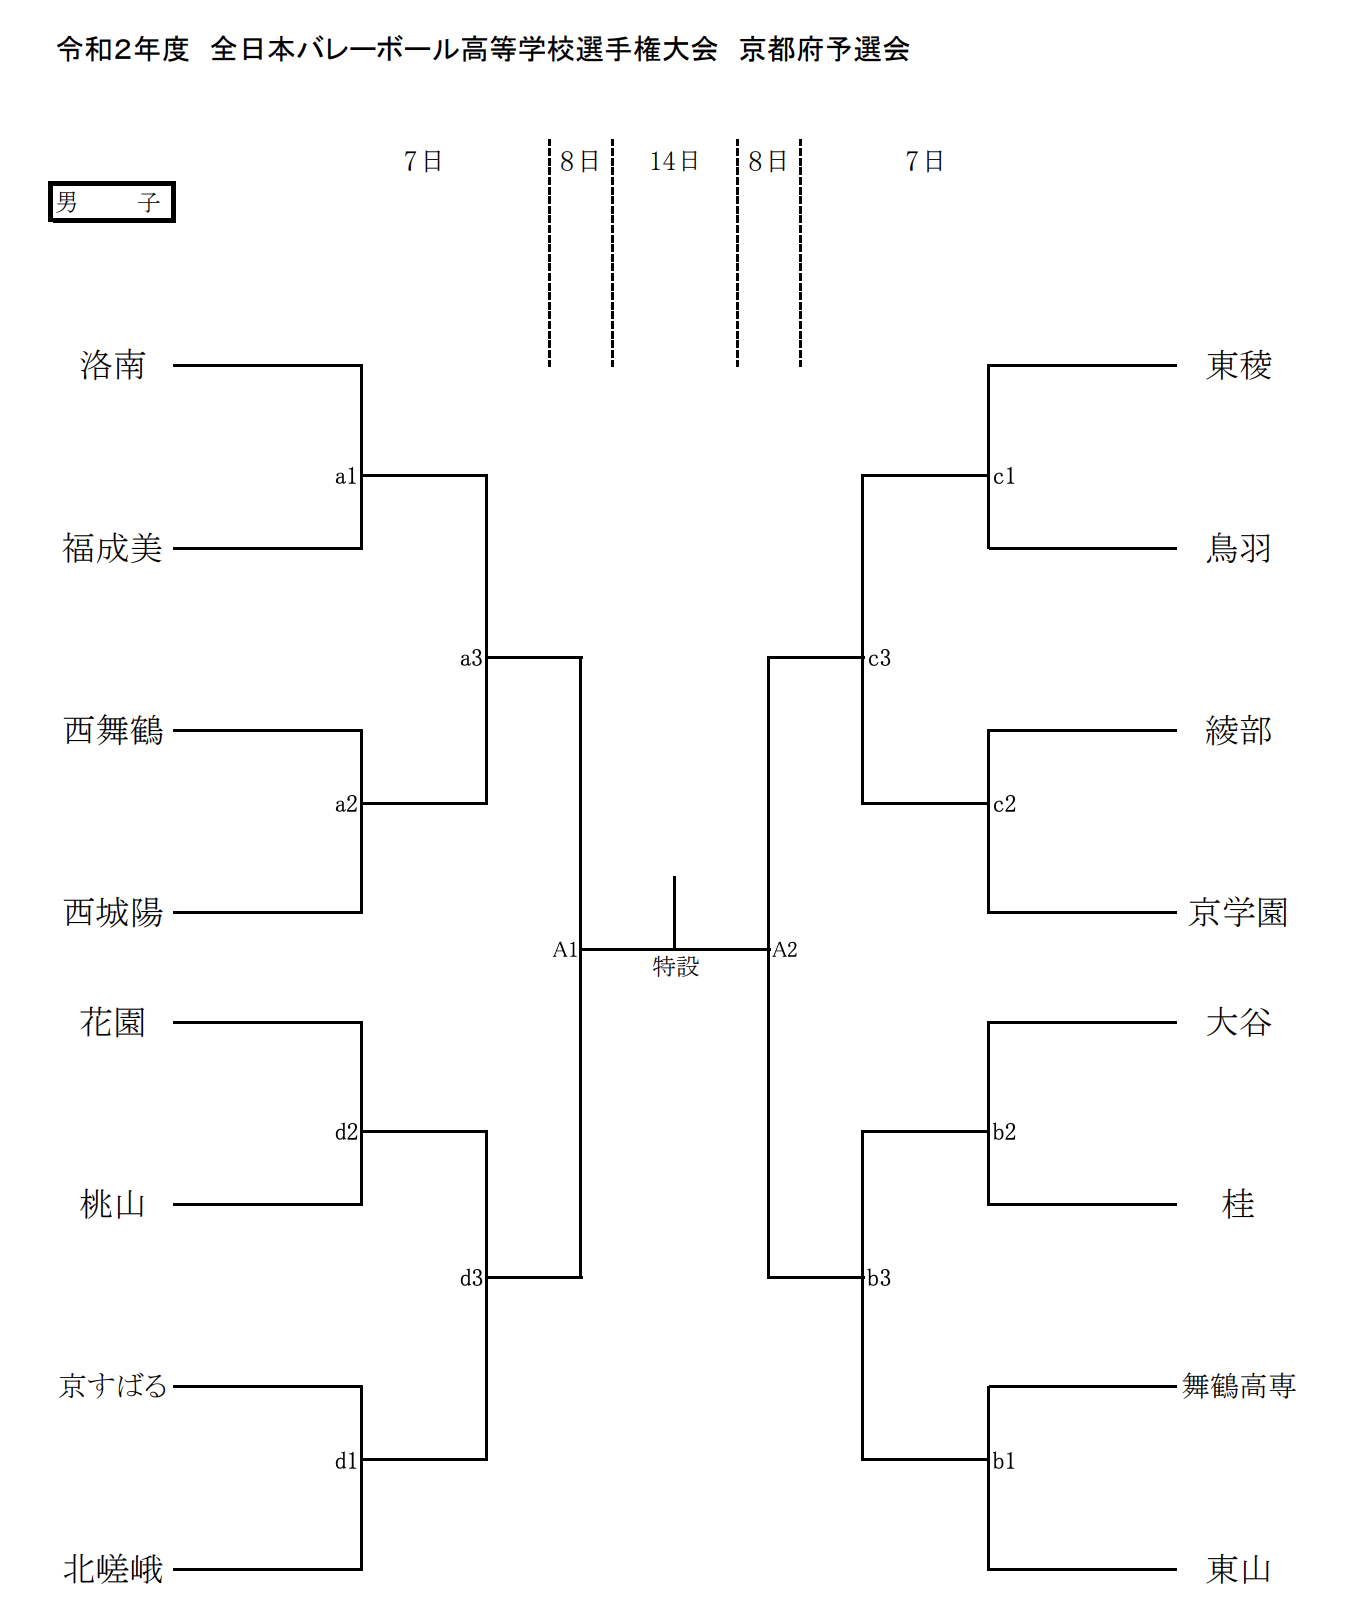 京都 21春高バレー県予選 第73回全日本バレーボール高校選手権大会 男子試合結果